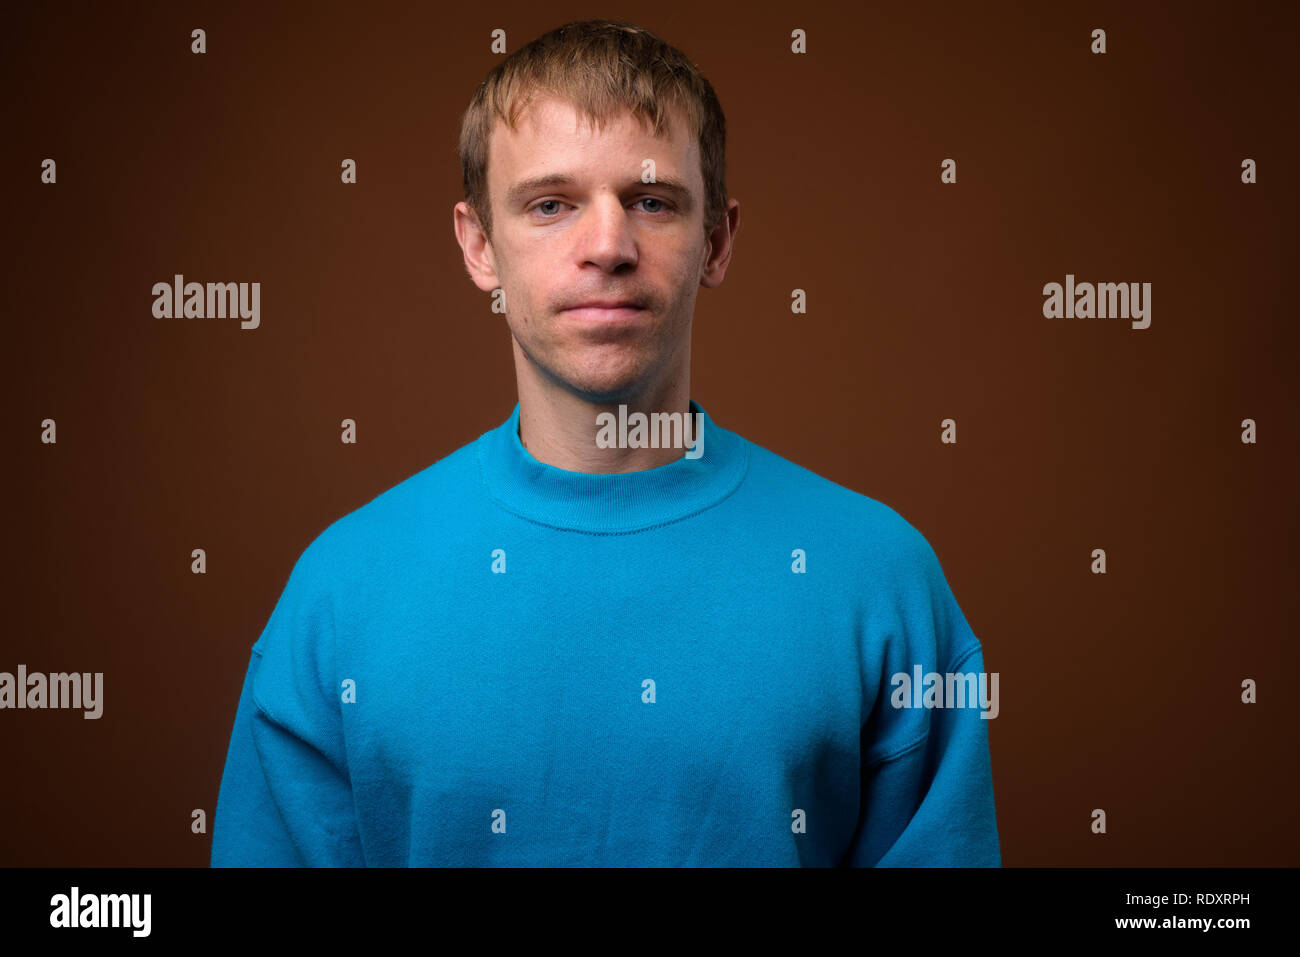 Mann mit blauen Pullover gegen braunen Hintergrund Stockfoto